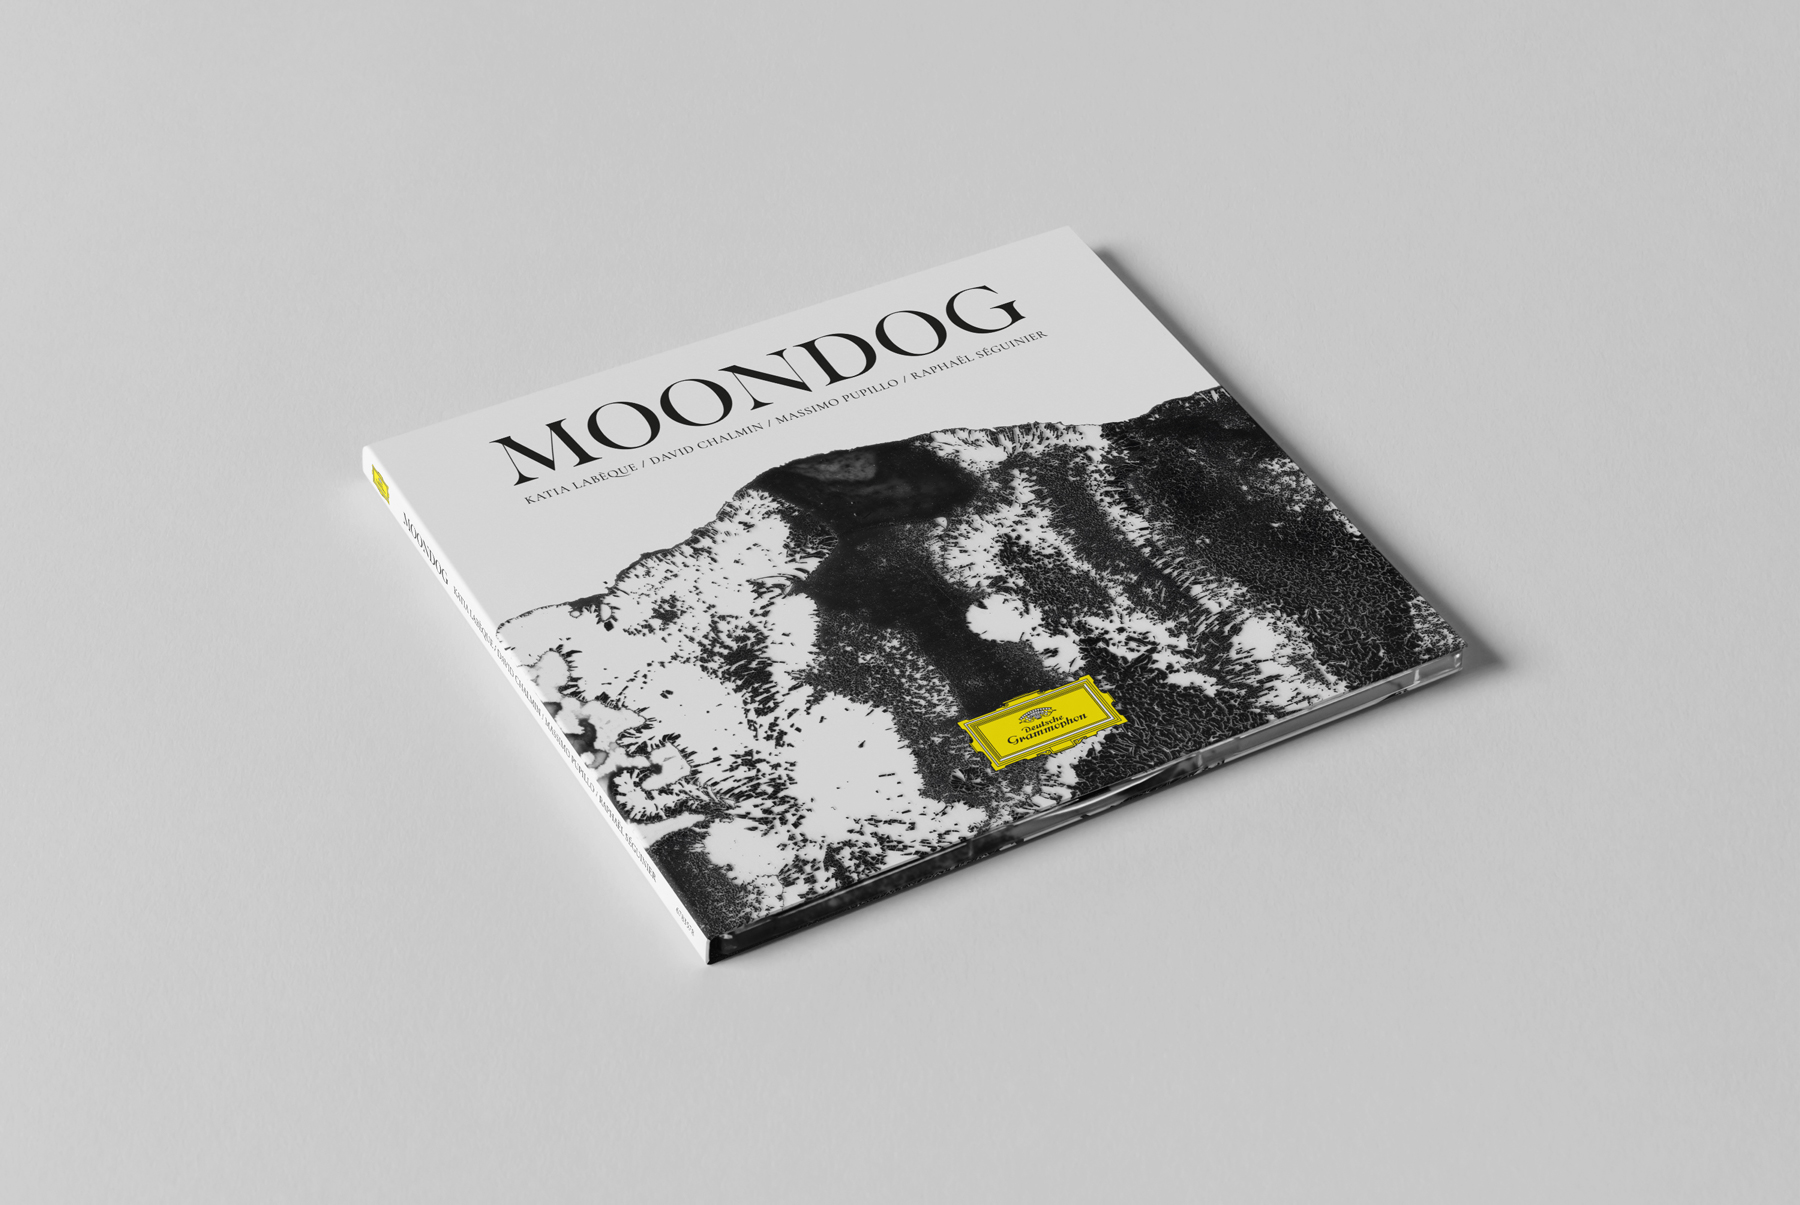 moondog-cd-1